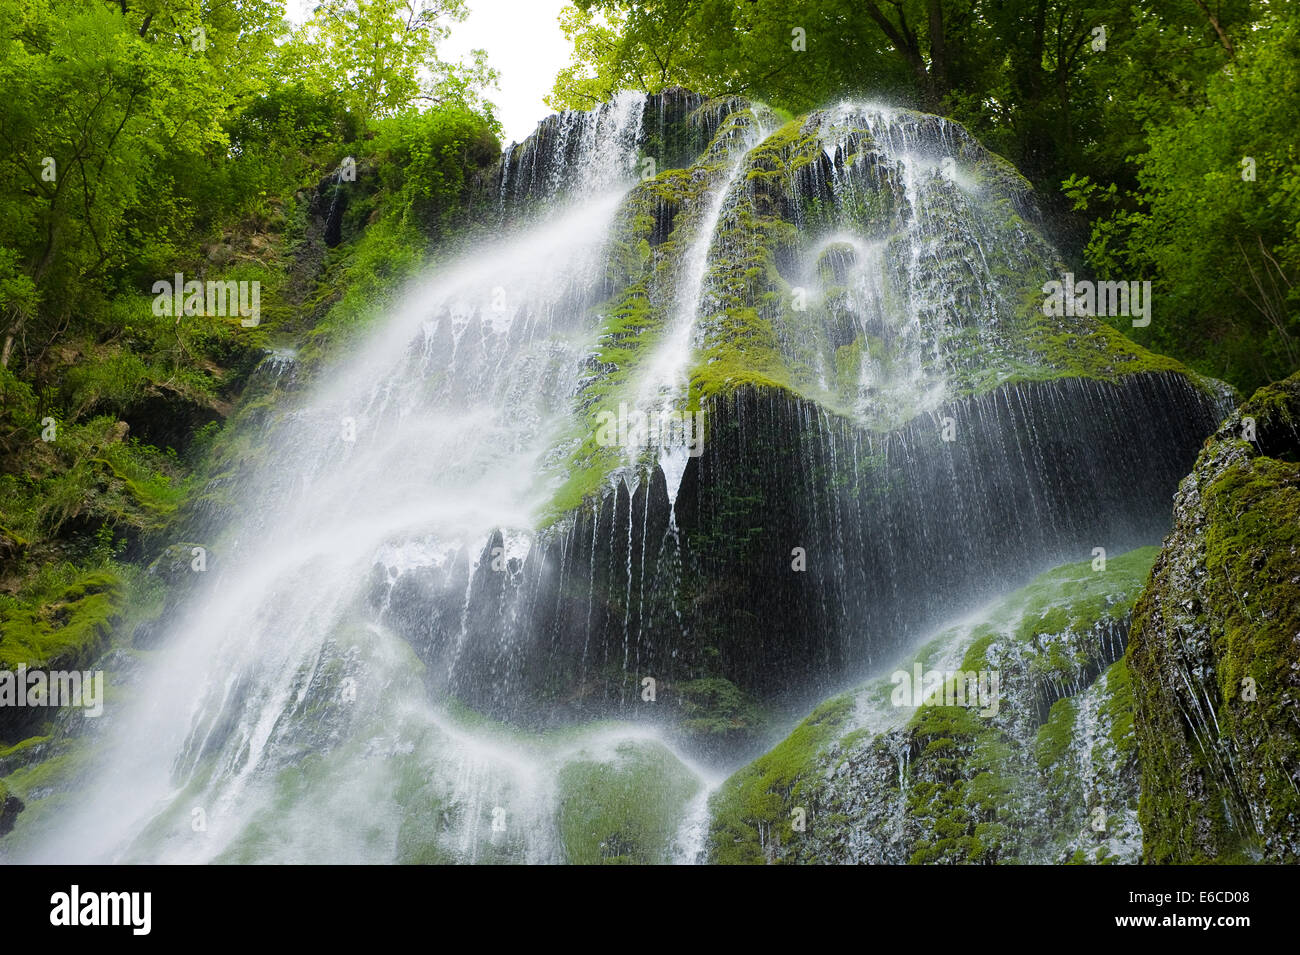 Der Wasserfall genannt Kaskade nahe dem kleinen Dorf Autoire im Bezirk Dordogne in Frankreich Stockfoto